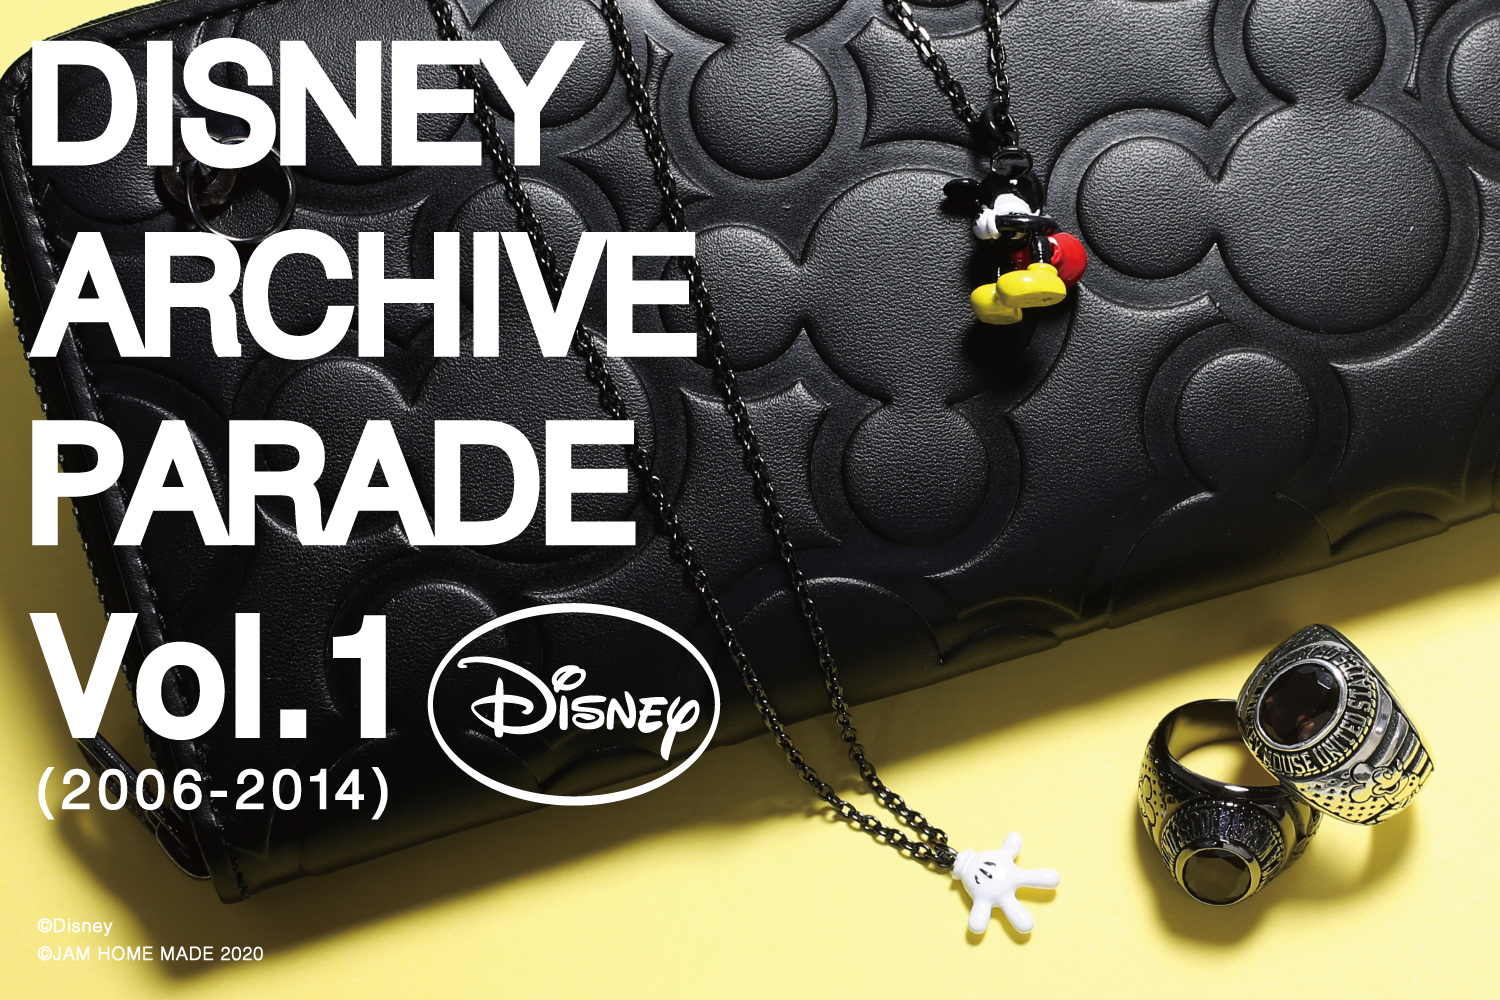 世界中で愛され続けている ミッキーマウス のプロダクトシリーズ Disney Archive Parade 年3月14日 土 より予約開始 株式会社 Jam Home Madeのプレスリリース